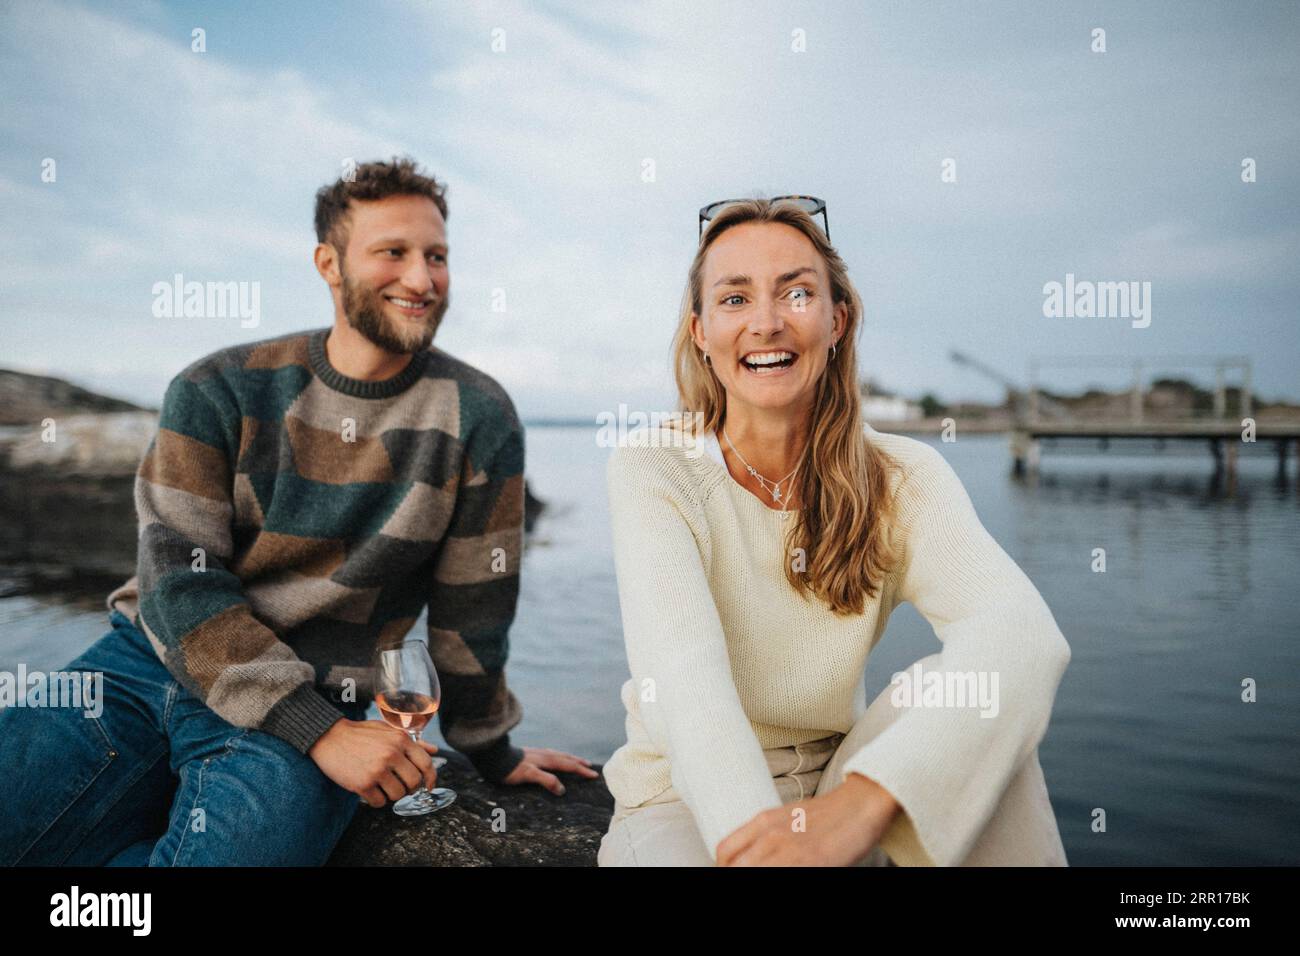 Glückliche Frau, die mit einem männlichen Freund sitzt und Wein trinkt, während sie auf einem Felsen in der Nähe des Sees sitzt Stockfoto